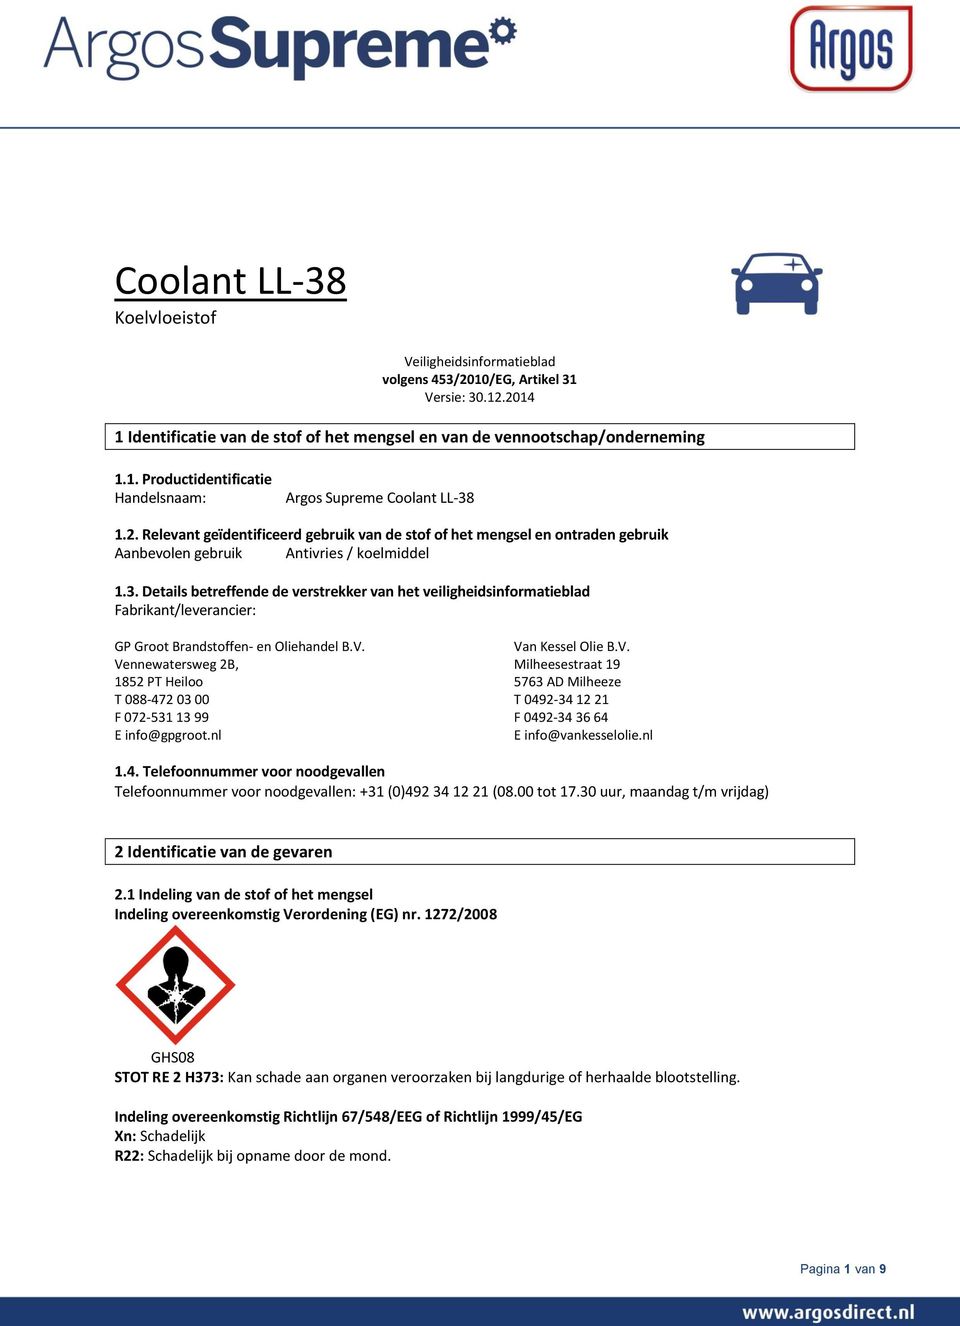 Details betreffende de verstrekker van het veiligheidsinformatieblad Fabrikant/leverancier: GP Groot Brandstoffen- en Oliehandel B.V.